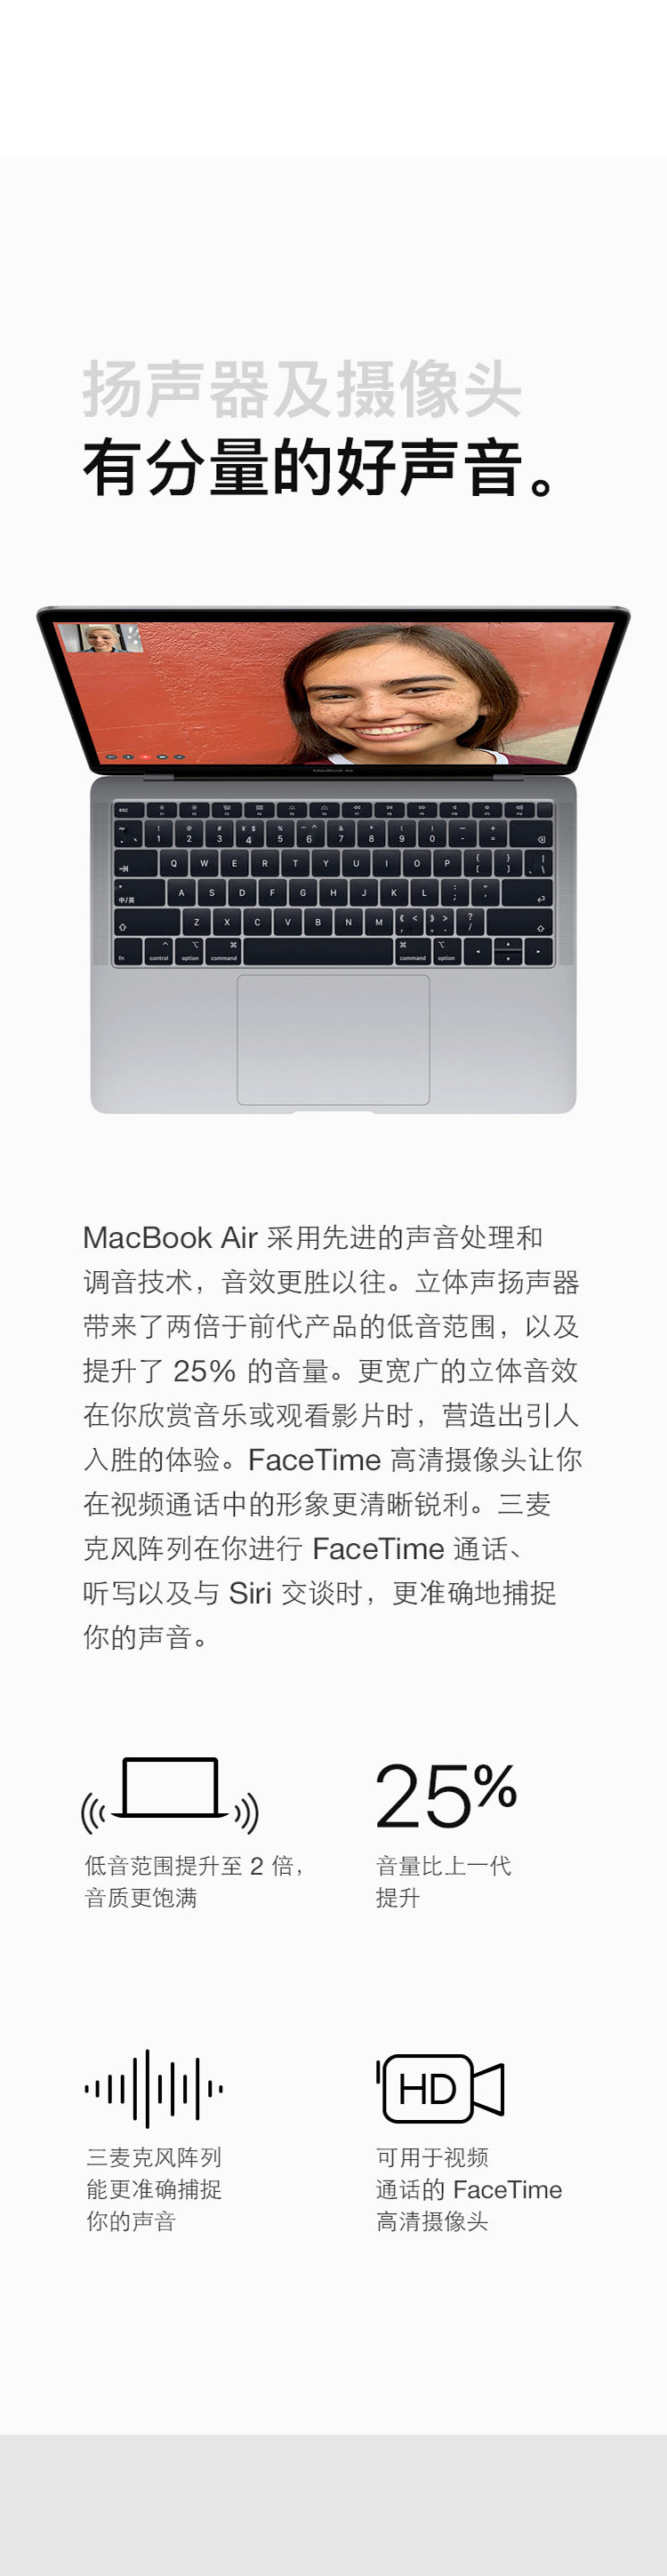 苹果/APPLE Macbook Air 13.3寸 笔记本电脑 MVFH2 MVFK2 MVFM